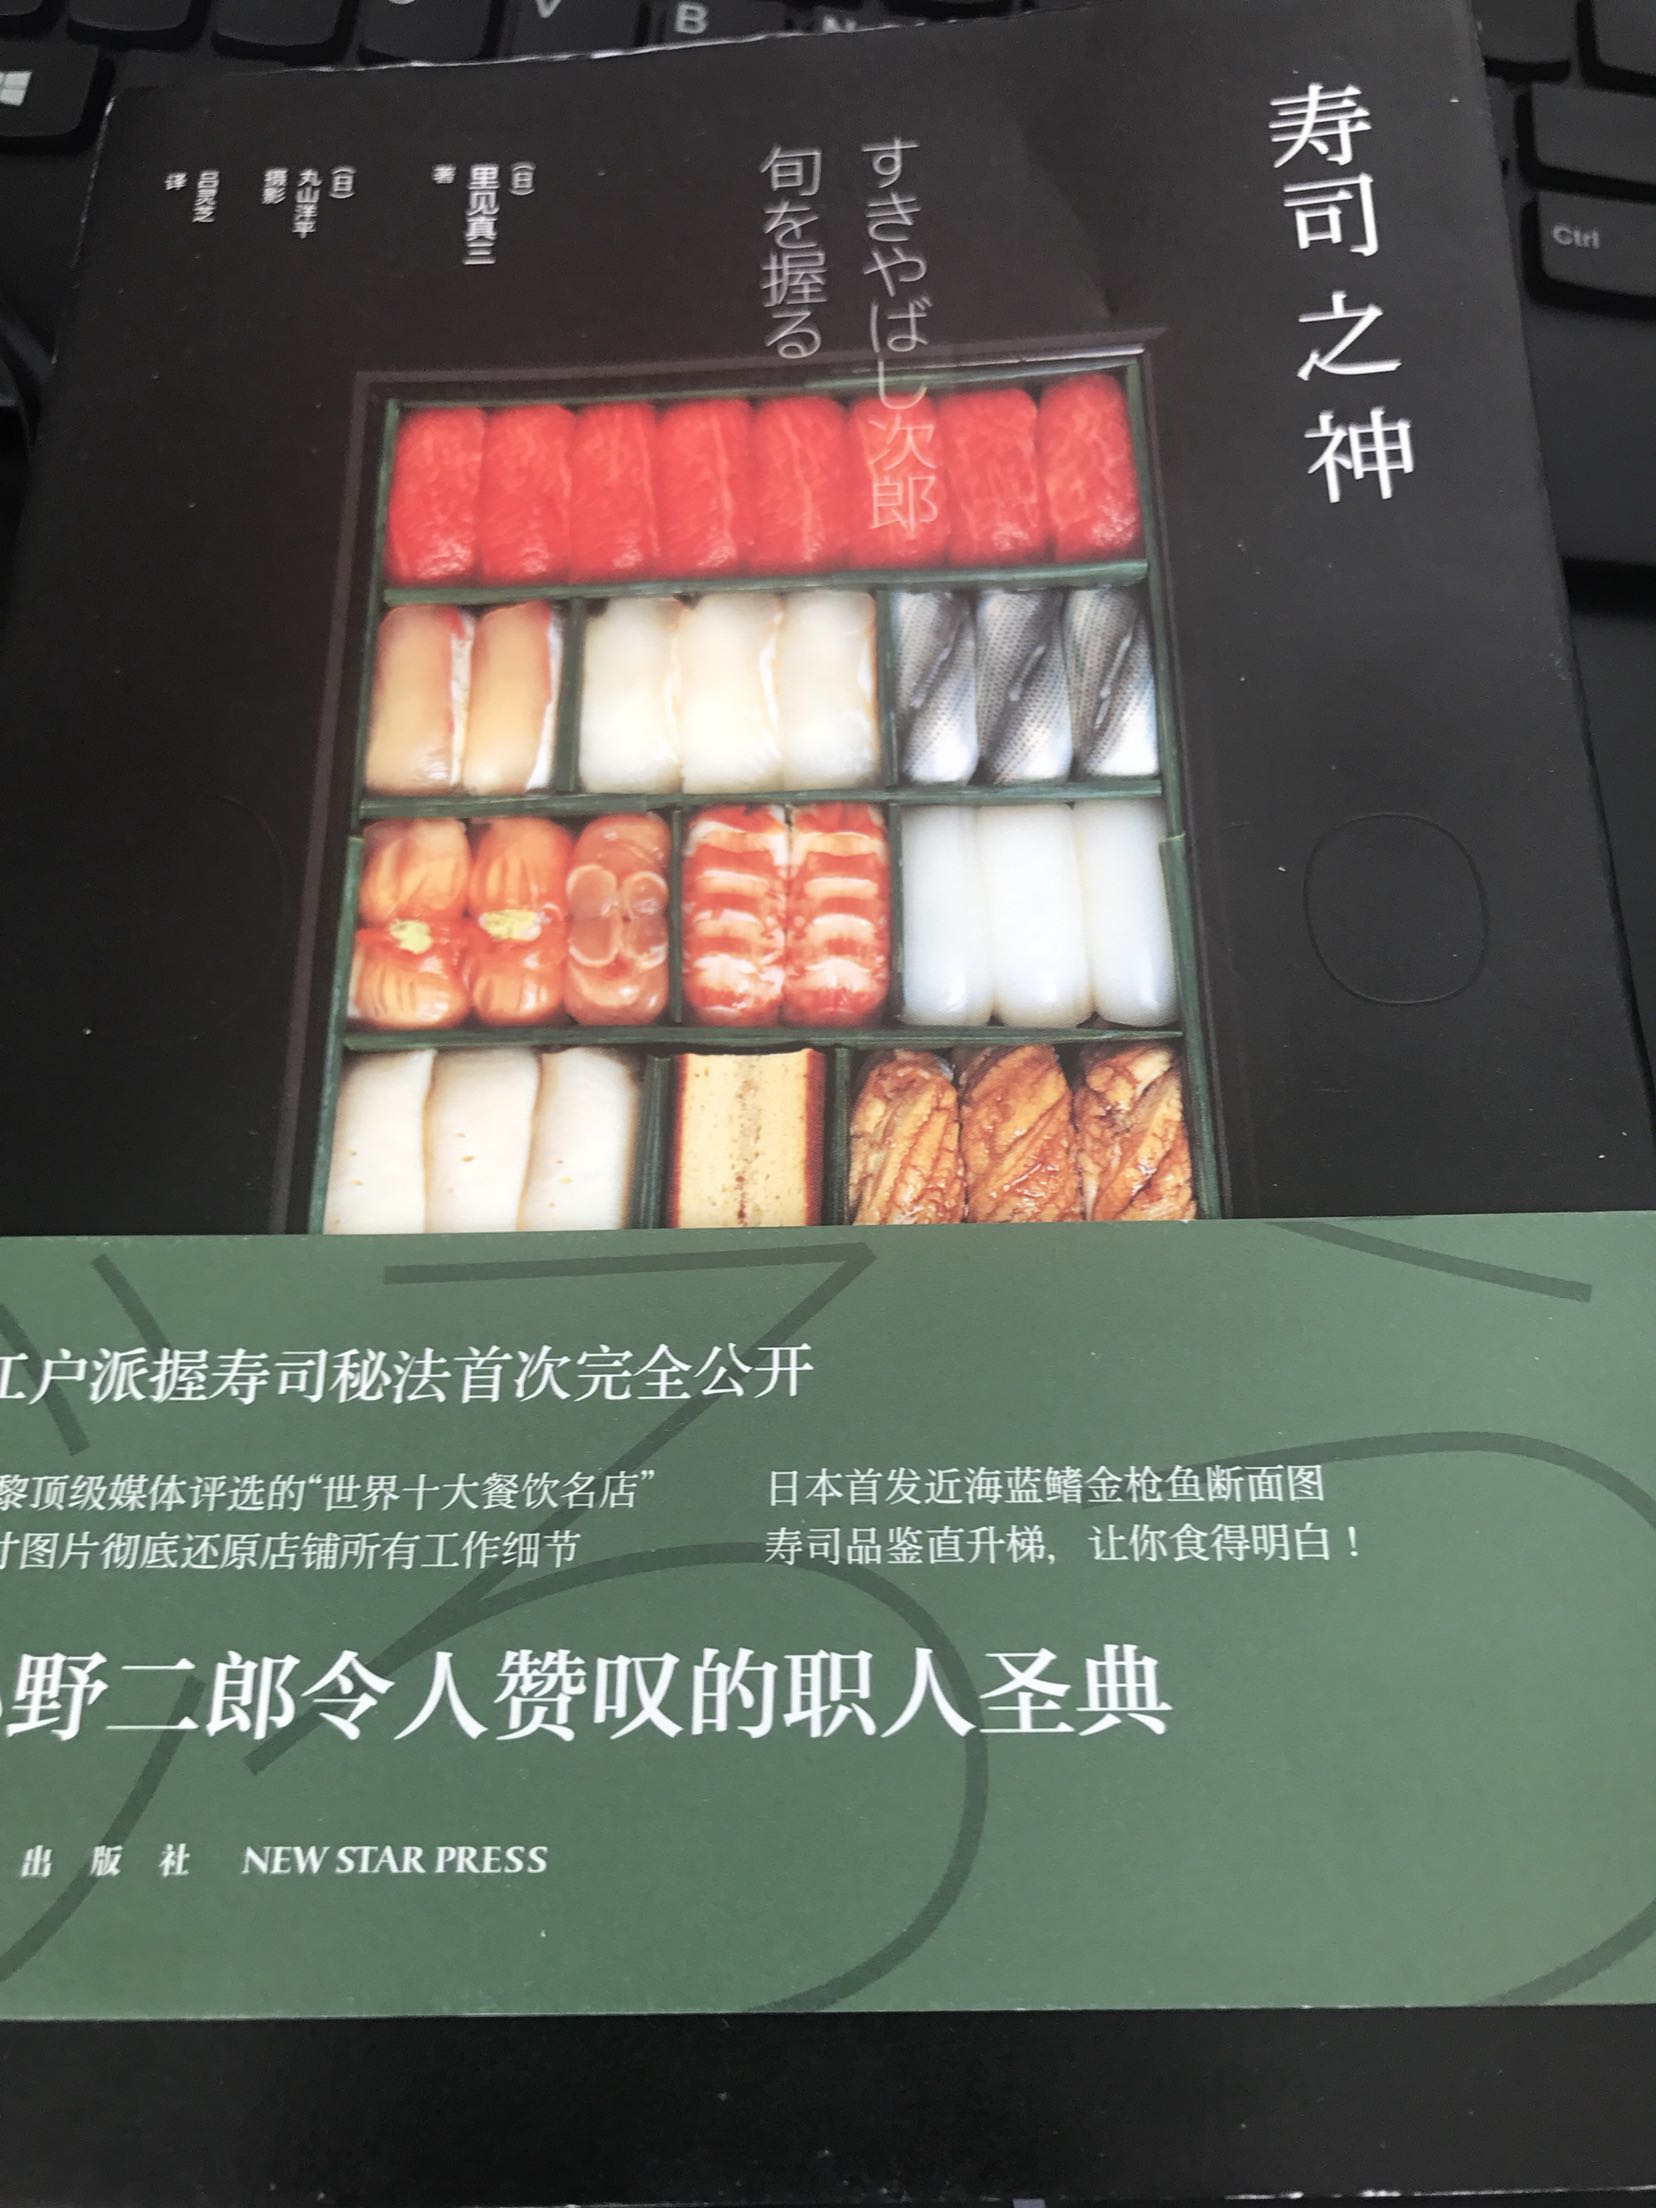 书很值得看，对做寿司很有帮助，我喜欢，寿司之神和天妇罗之神，匠人精神！棒棒哒